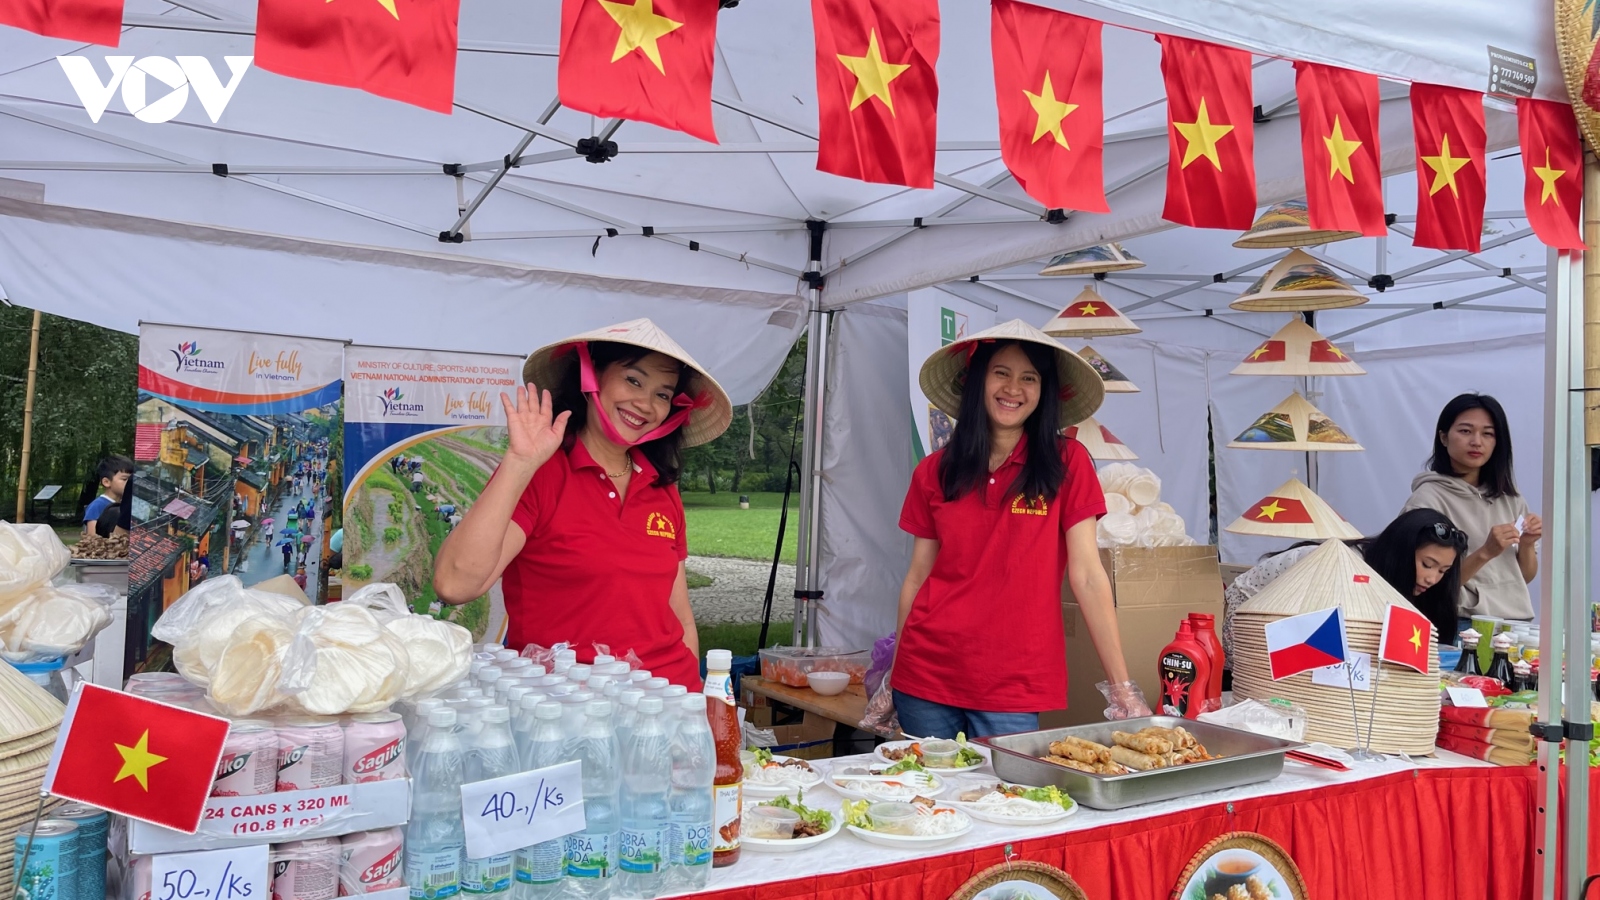 Độc đáo sản phẩm Việt Nam tại lễ hội văn hóa đa sắc màu tại Praha